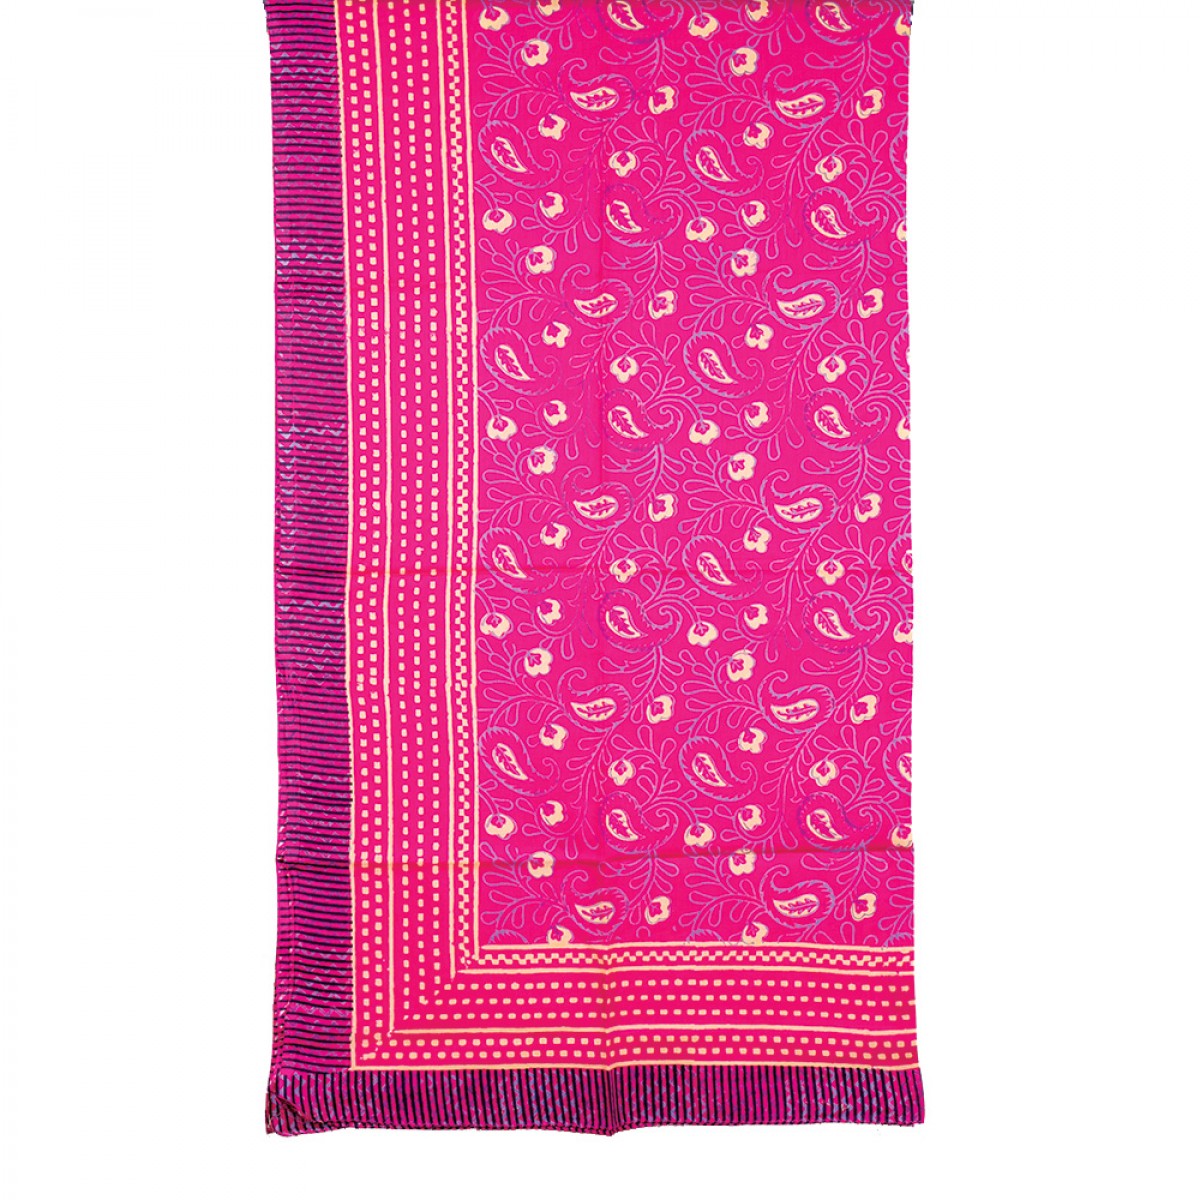 Hand Block Printed Sarongs - Hot Pink